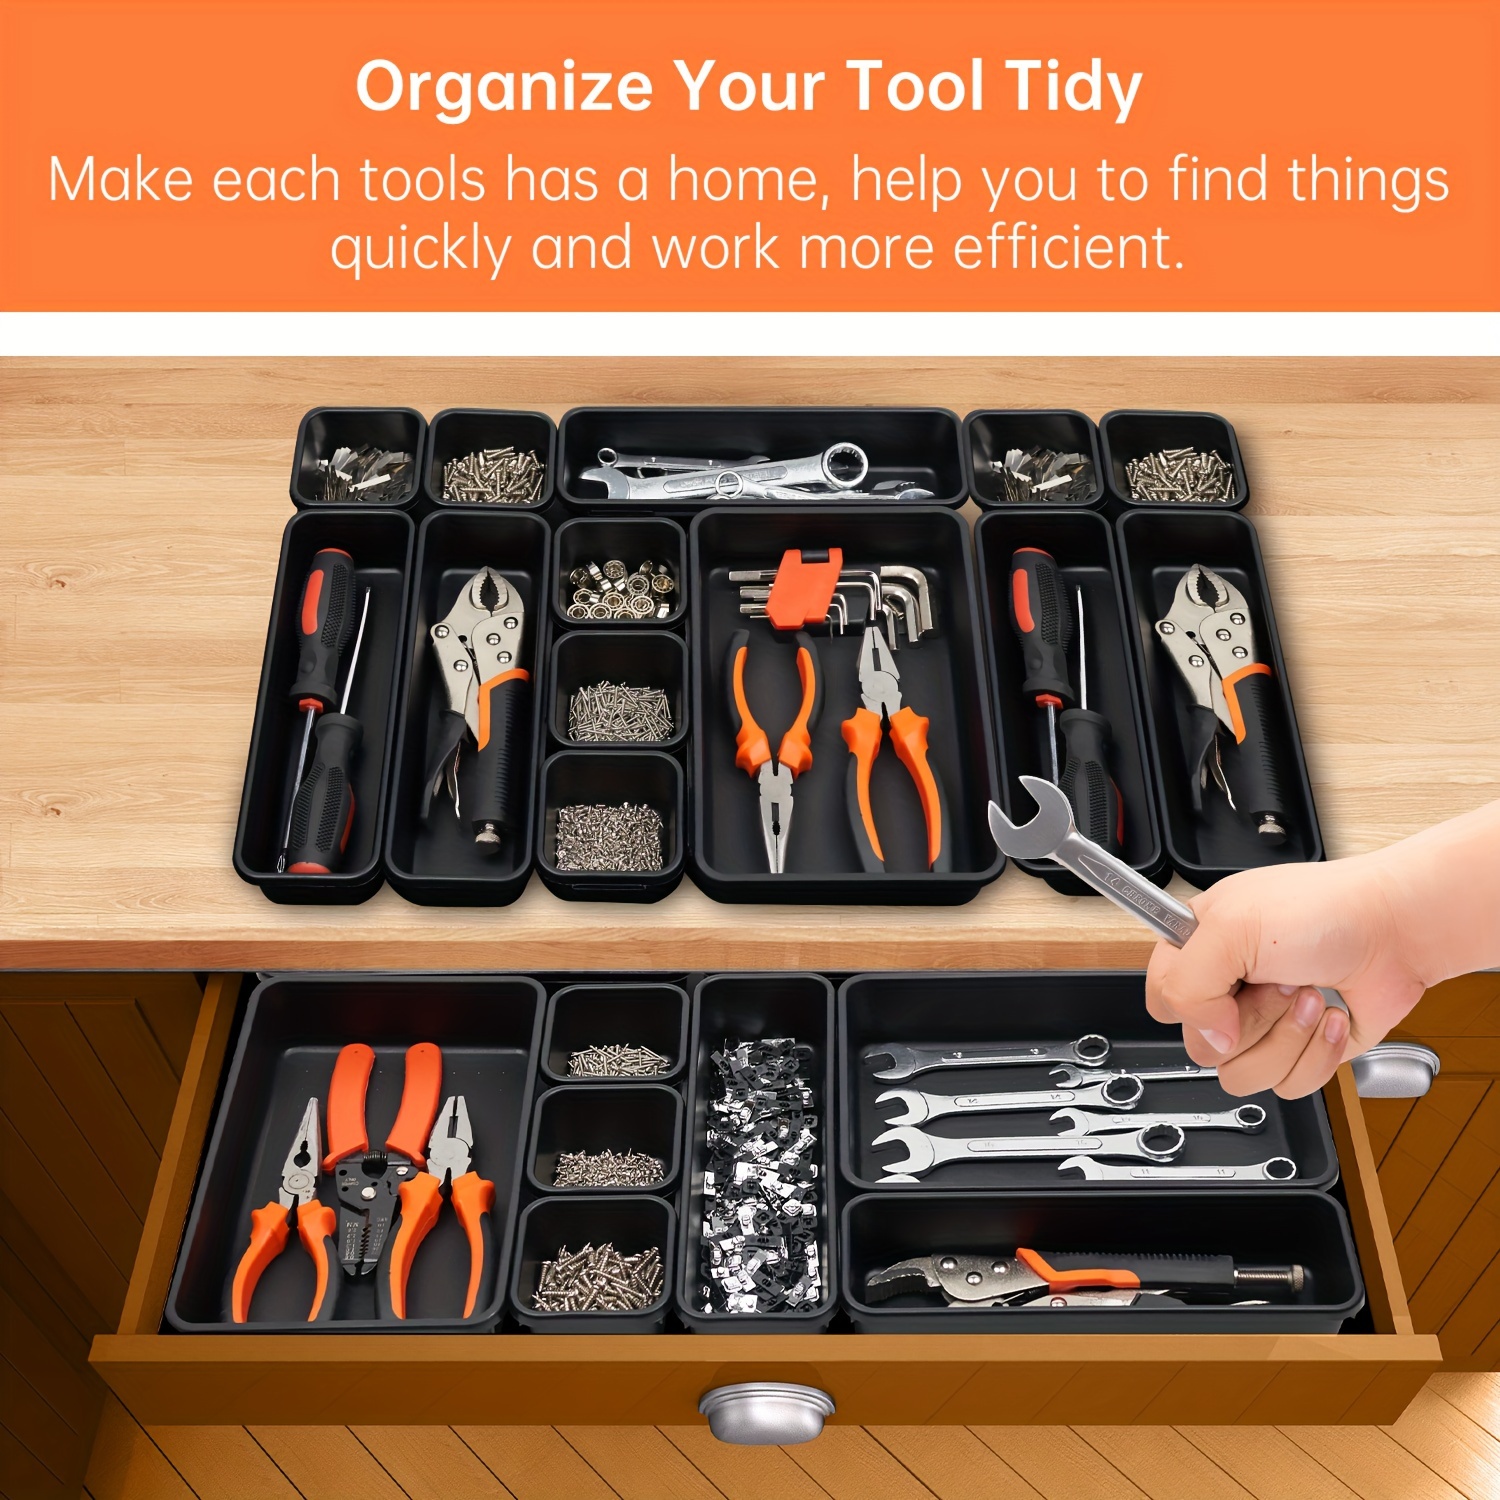 Garage Tool Drawer Cabinet Tools Storage Organizer Rolling Tool